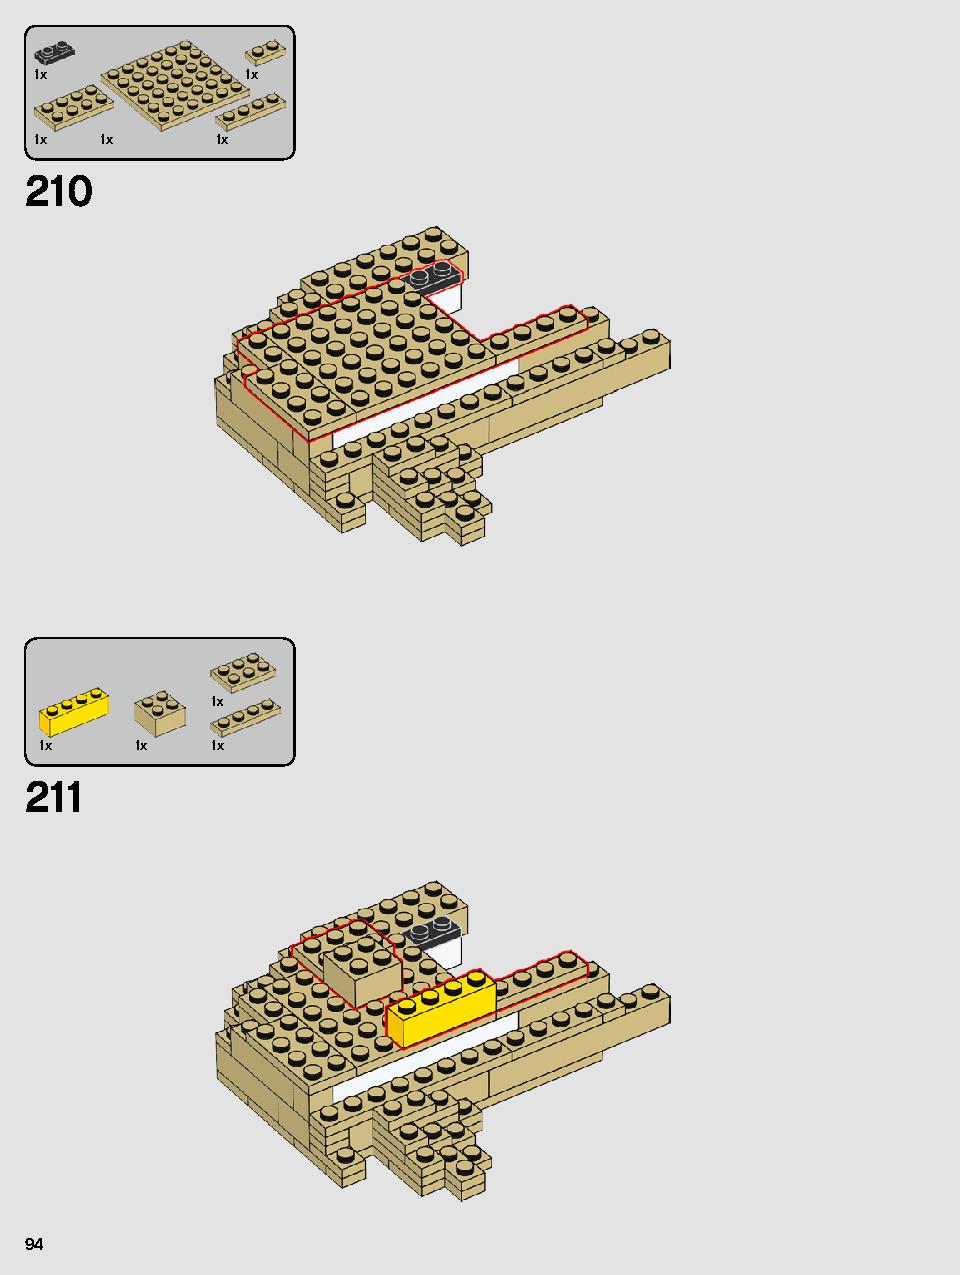 ヨーダ™ 75255 レゴの商品情報 レゴの説明書・組立方法 94 page